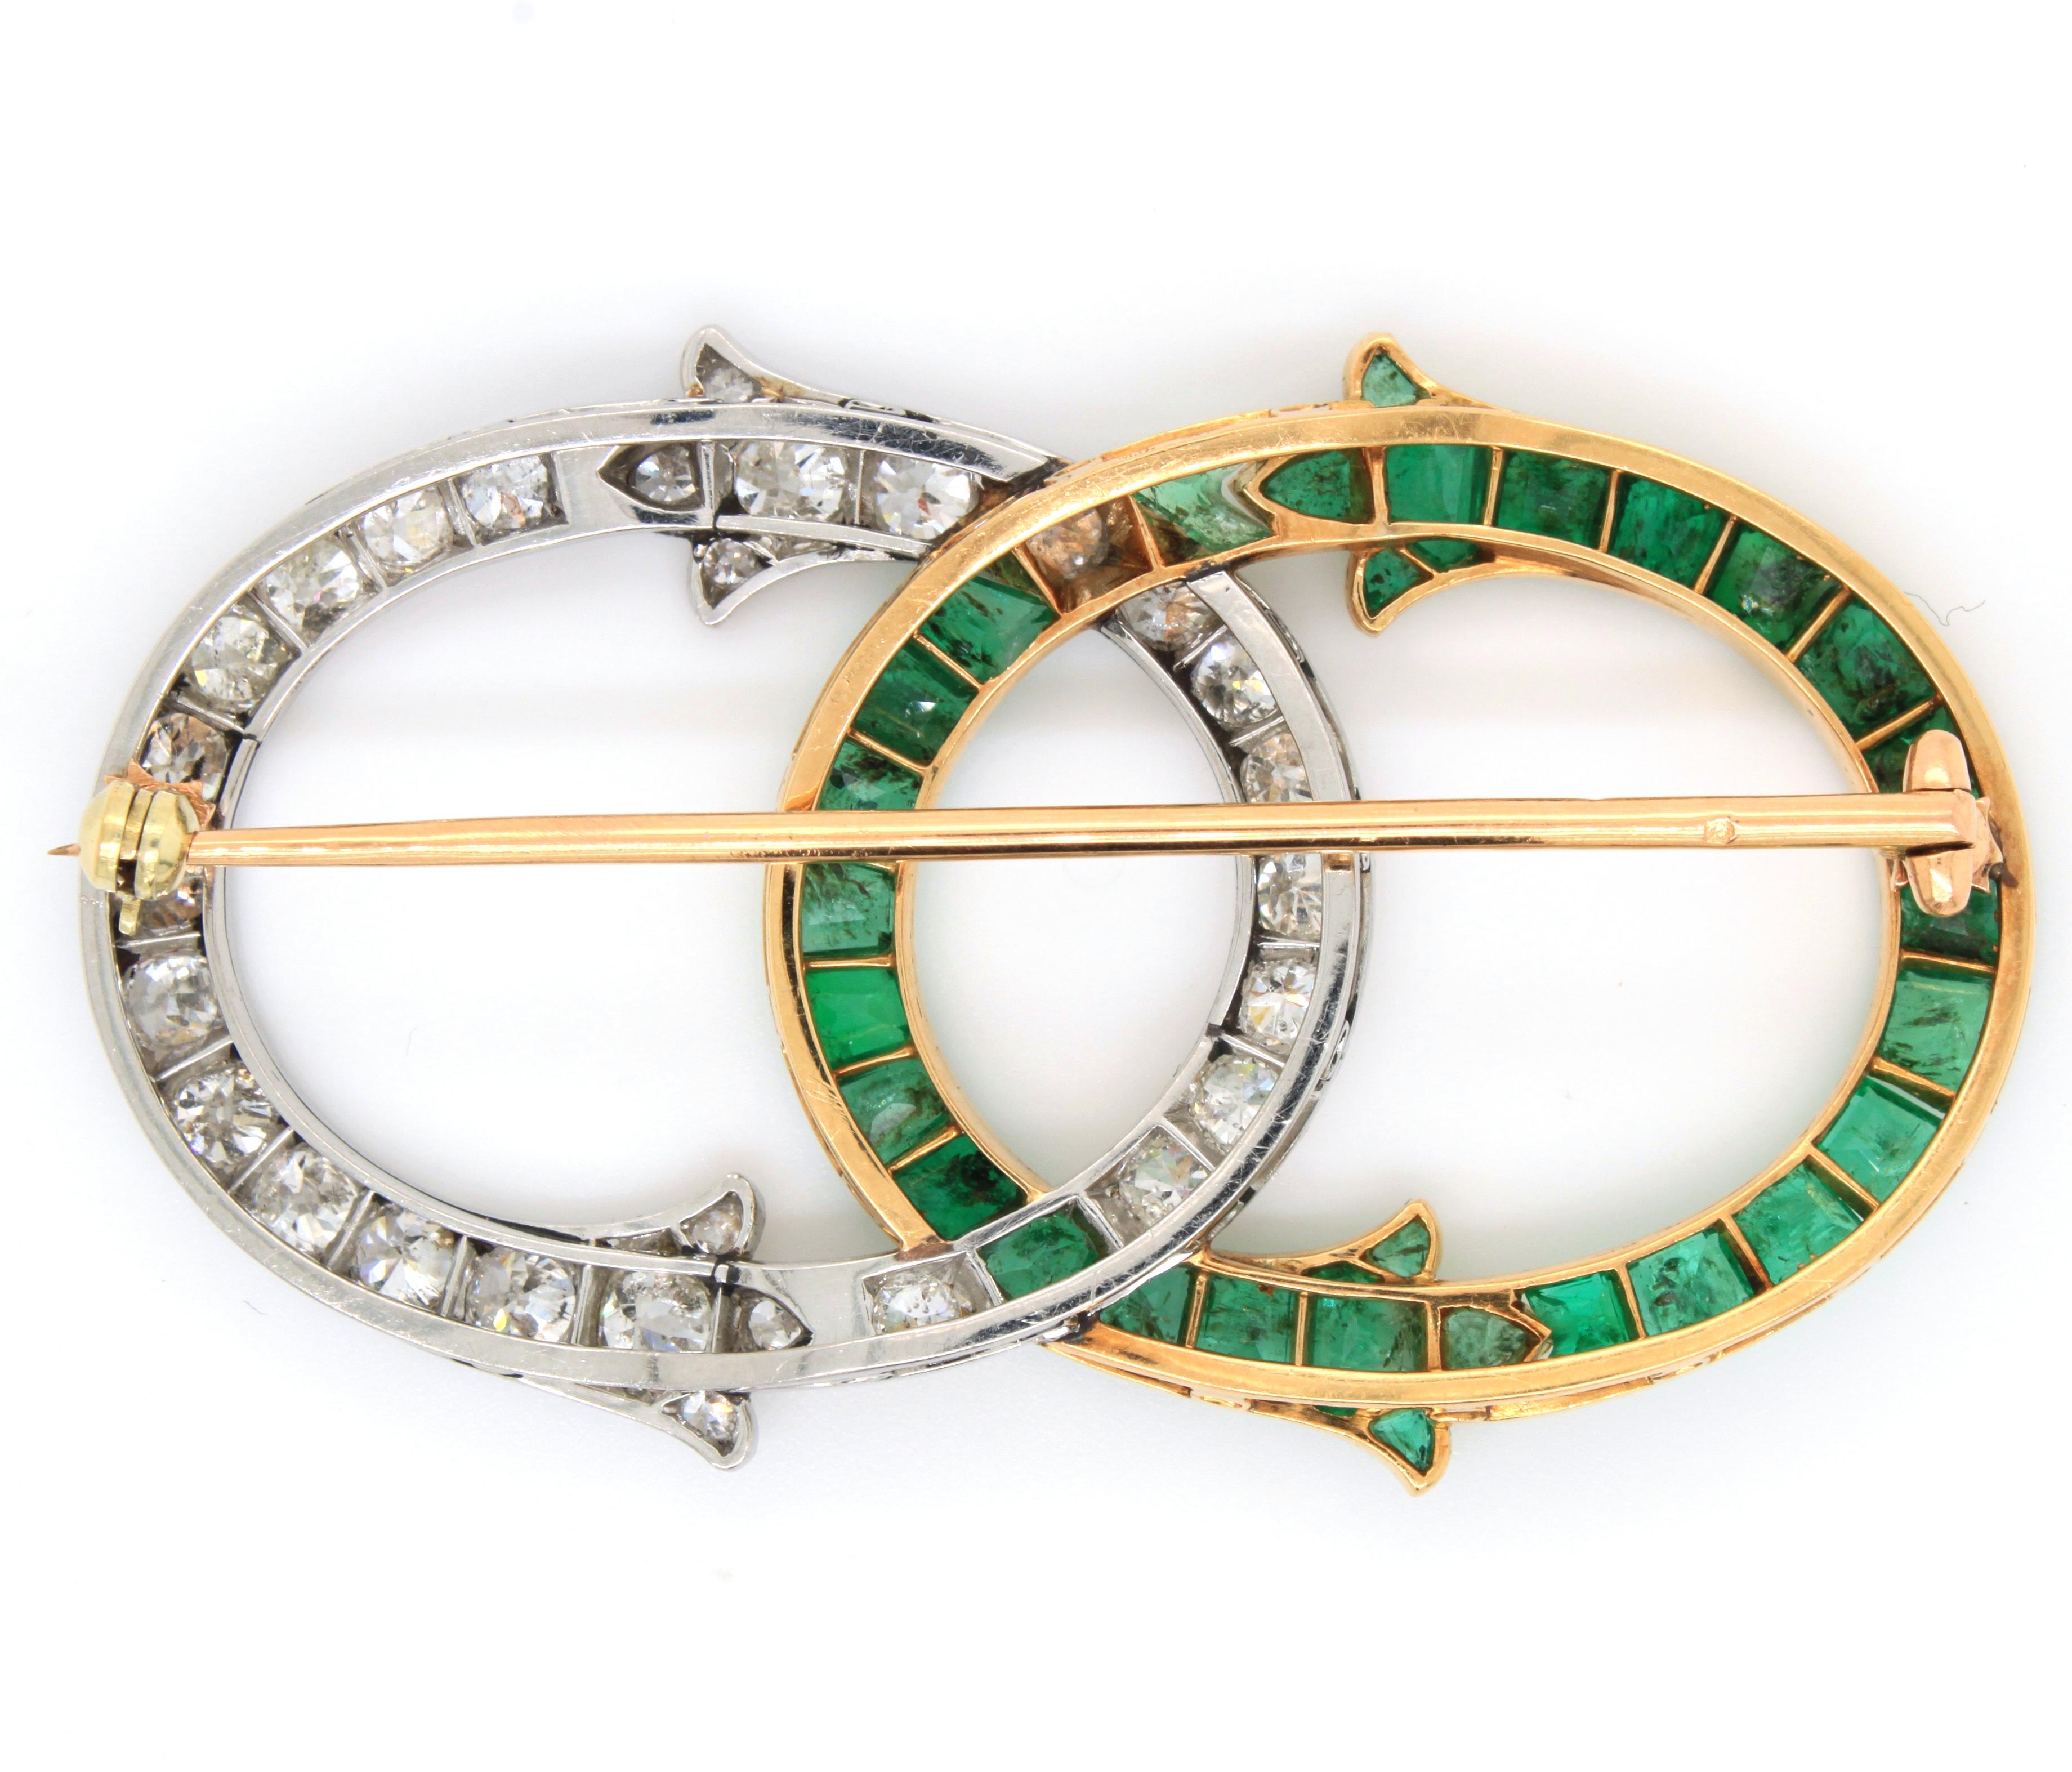 Eine sehr schöne französische Brosche mit Smaragd und Diamanten, von George Fonsèque Art Nouveau, ca. 1910er Jahre. Die Brosche besteht aus zwei ineinander verschlungenen Teilen, die jeweils mit Smaragden im Trapezschliff in Gelbgold und Diamanten